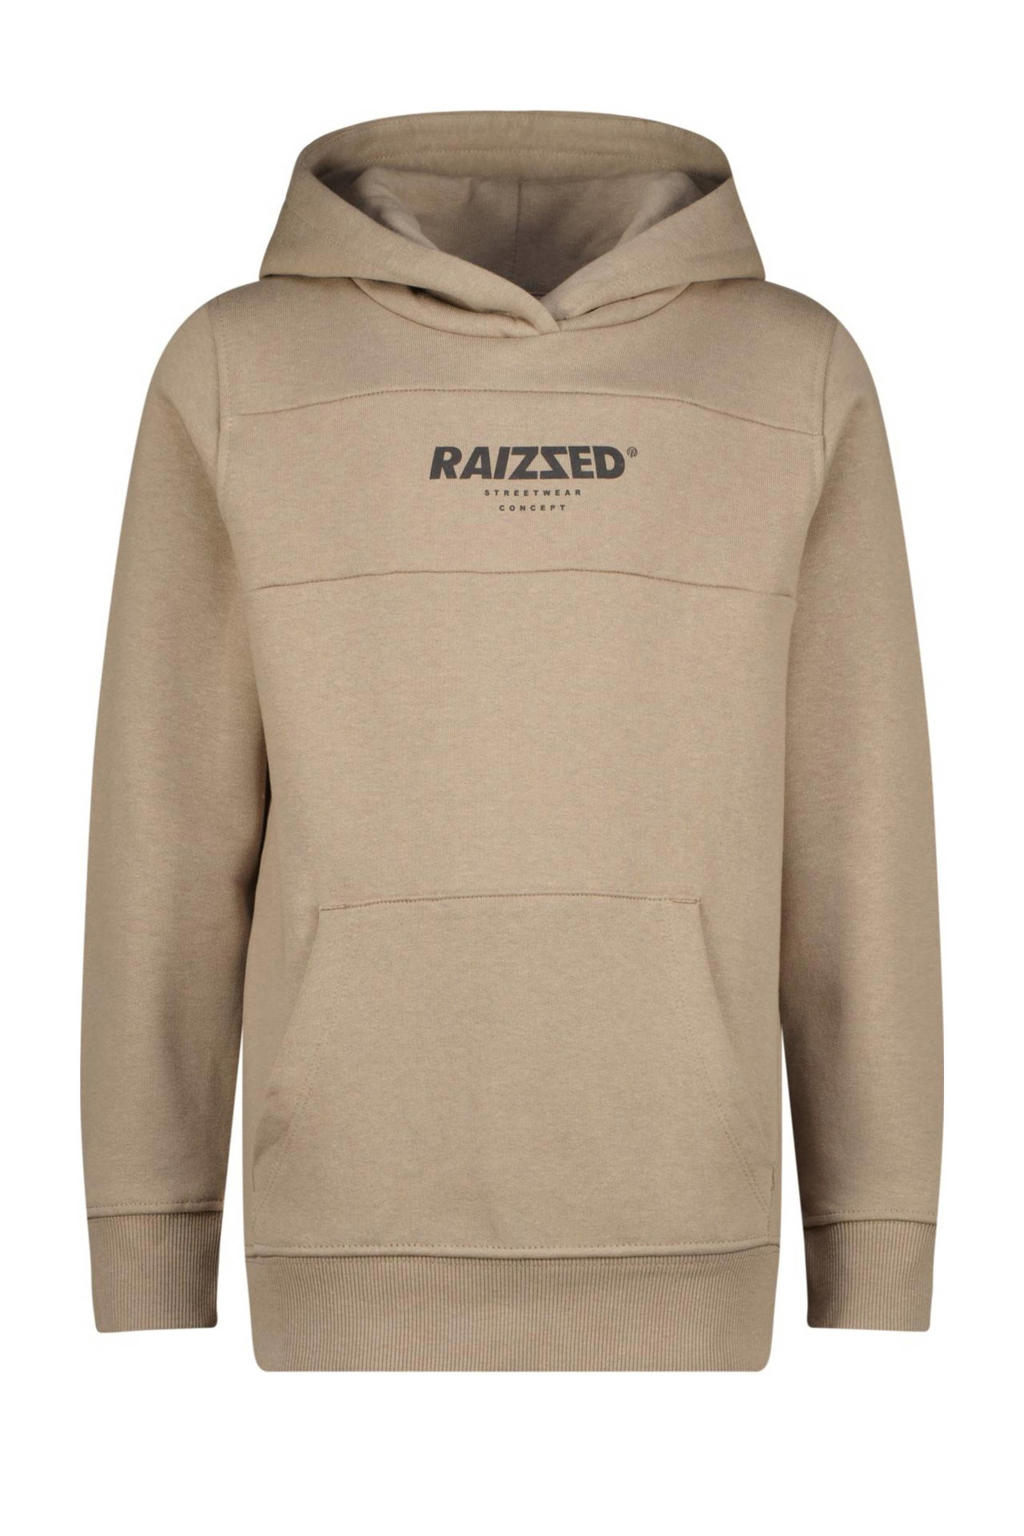 Grijze jongens Raizzed hoodie Pinesburg van sweat materiaal met logo dessin, lange mouwen en capuchon